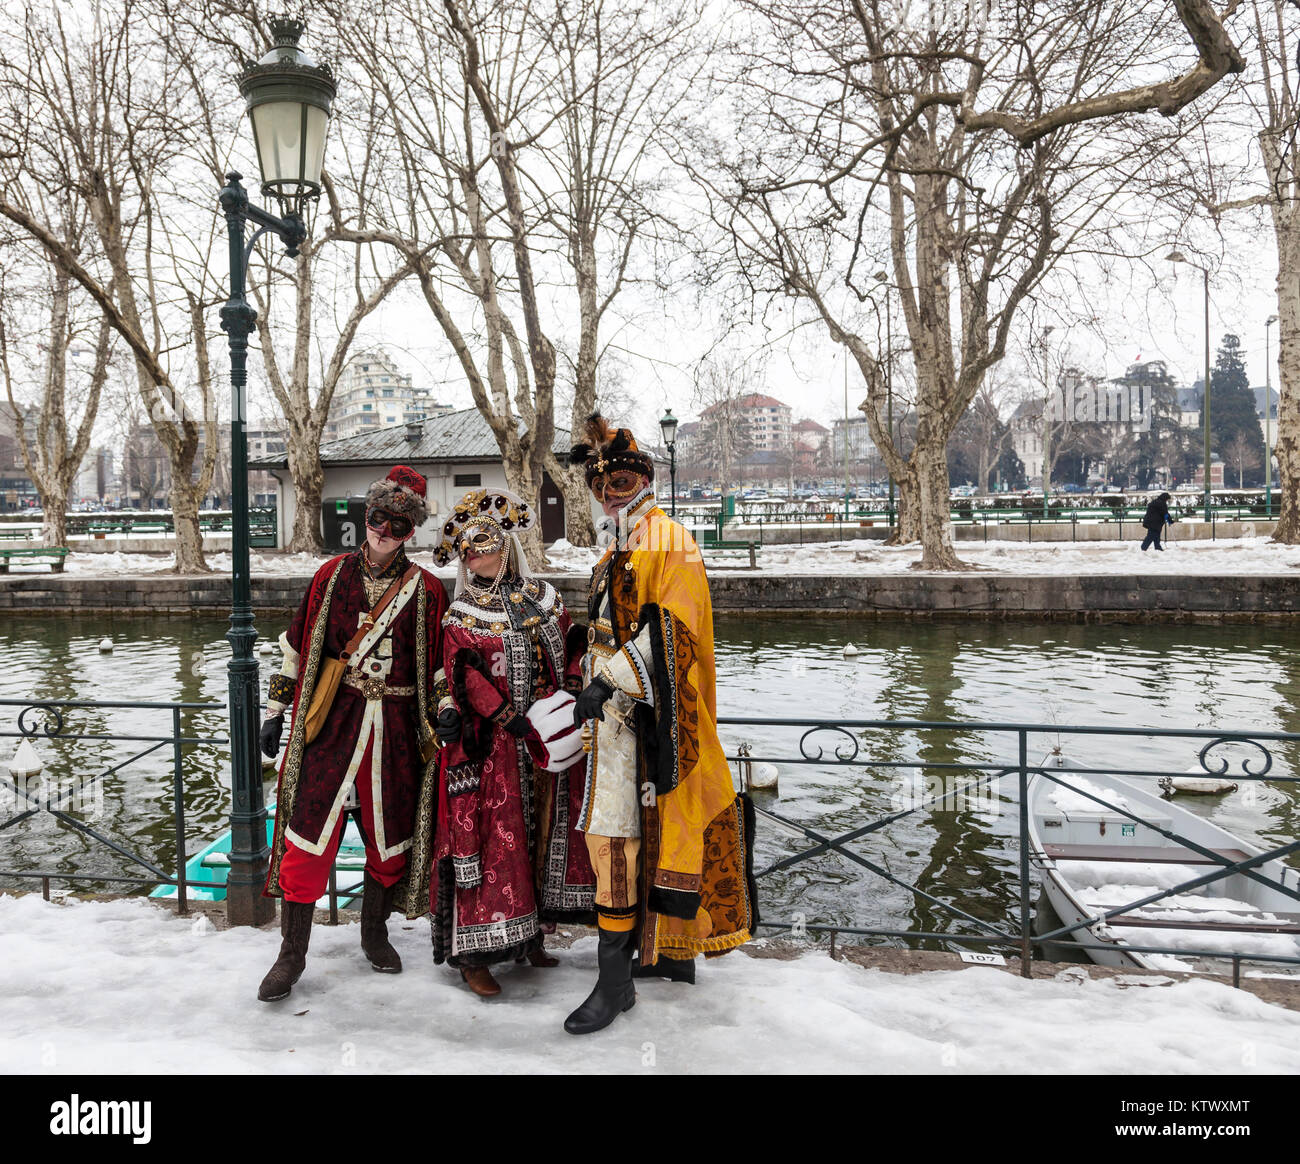 Annecy, Frankreich, 23. Februar 2013: Eine Gruppe von drei verkleidete Personen in Annecy, Frankreich posiert, während einer venezianischen Karneval, die die Schönheit feiert Stockfoto